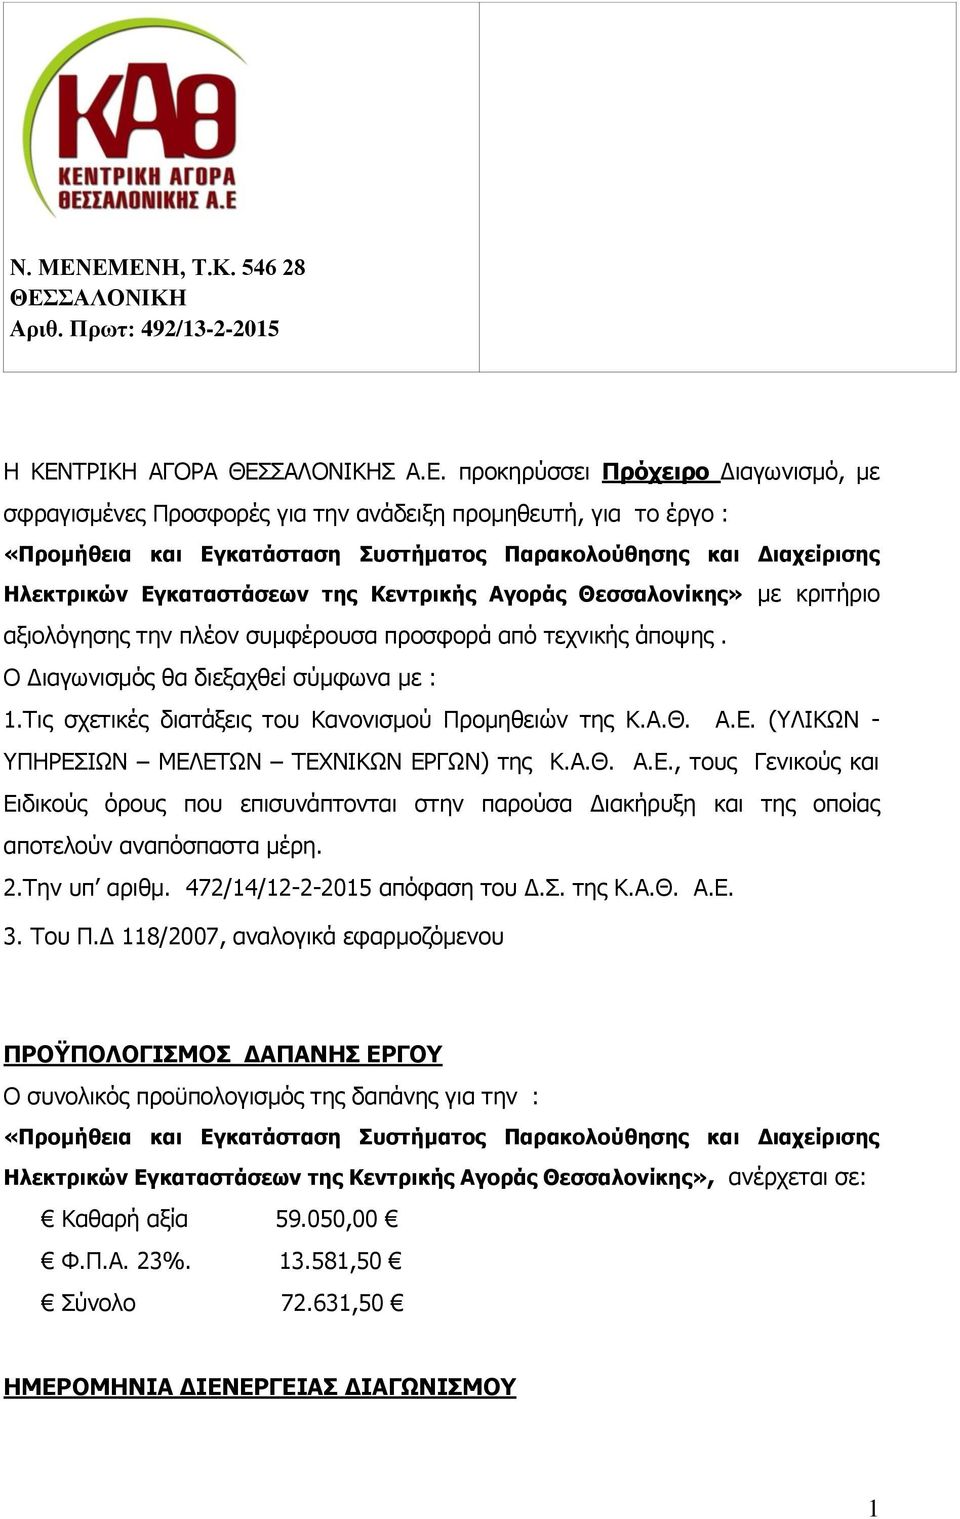 «Προμήθεια και Εγκατάσταση Συστήματος Παρακολούθησης και Διαχείρισης Ηλεκτρικών Εγκαταστάσεων της Κεντρικής Αγοράς Θεσσαλονίκης» με κριτήριο αξιολόγησης την πλέον συμφέρουσα προσφορά από τεχνικής